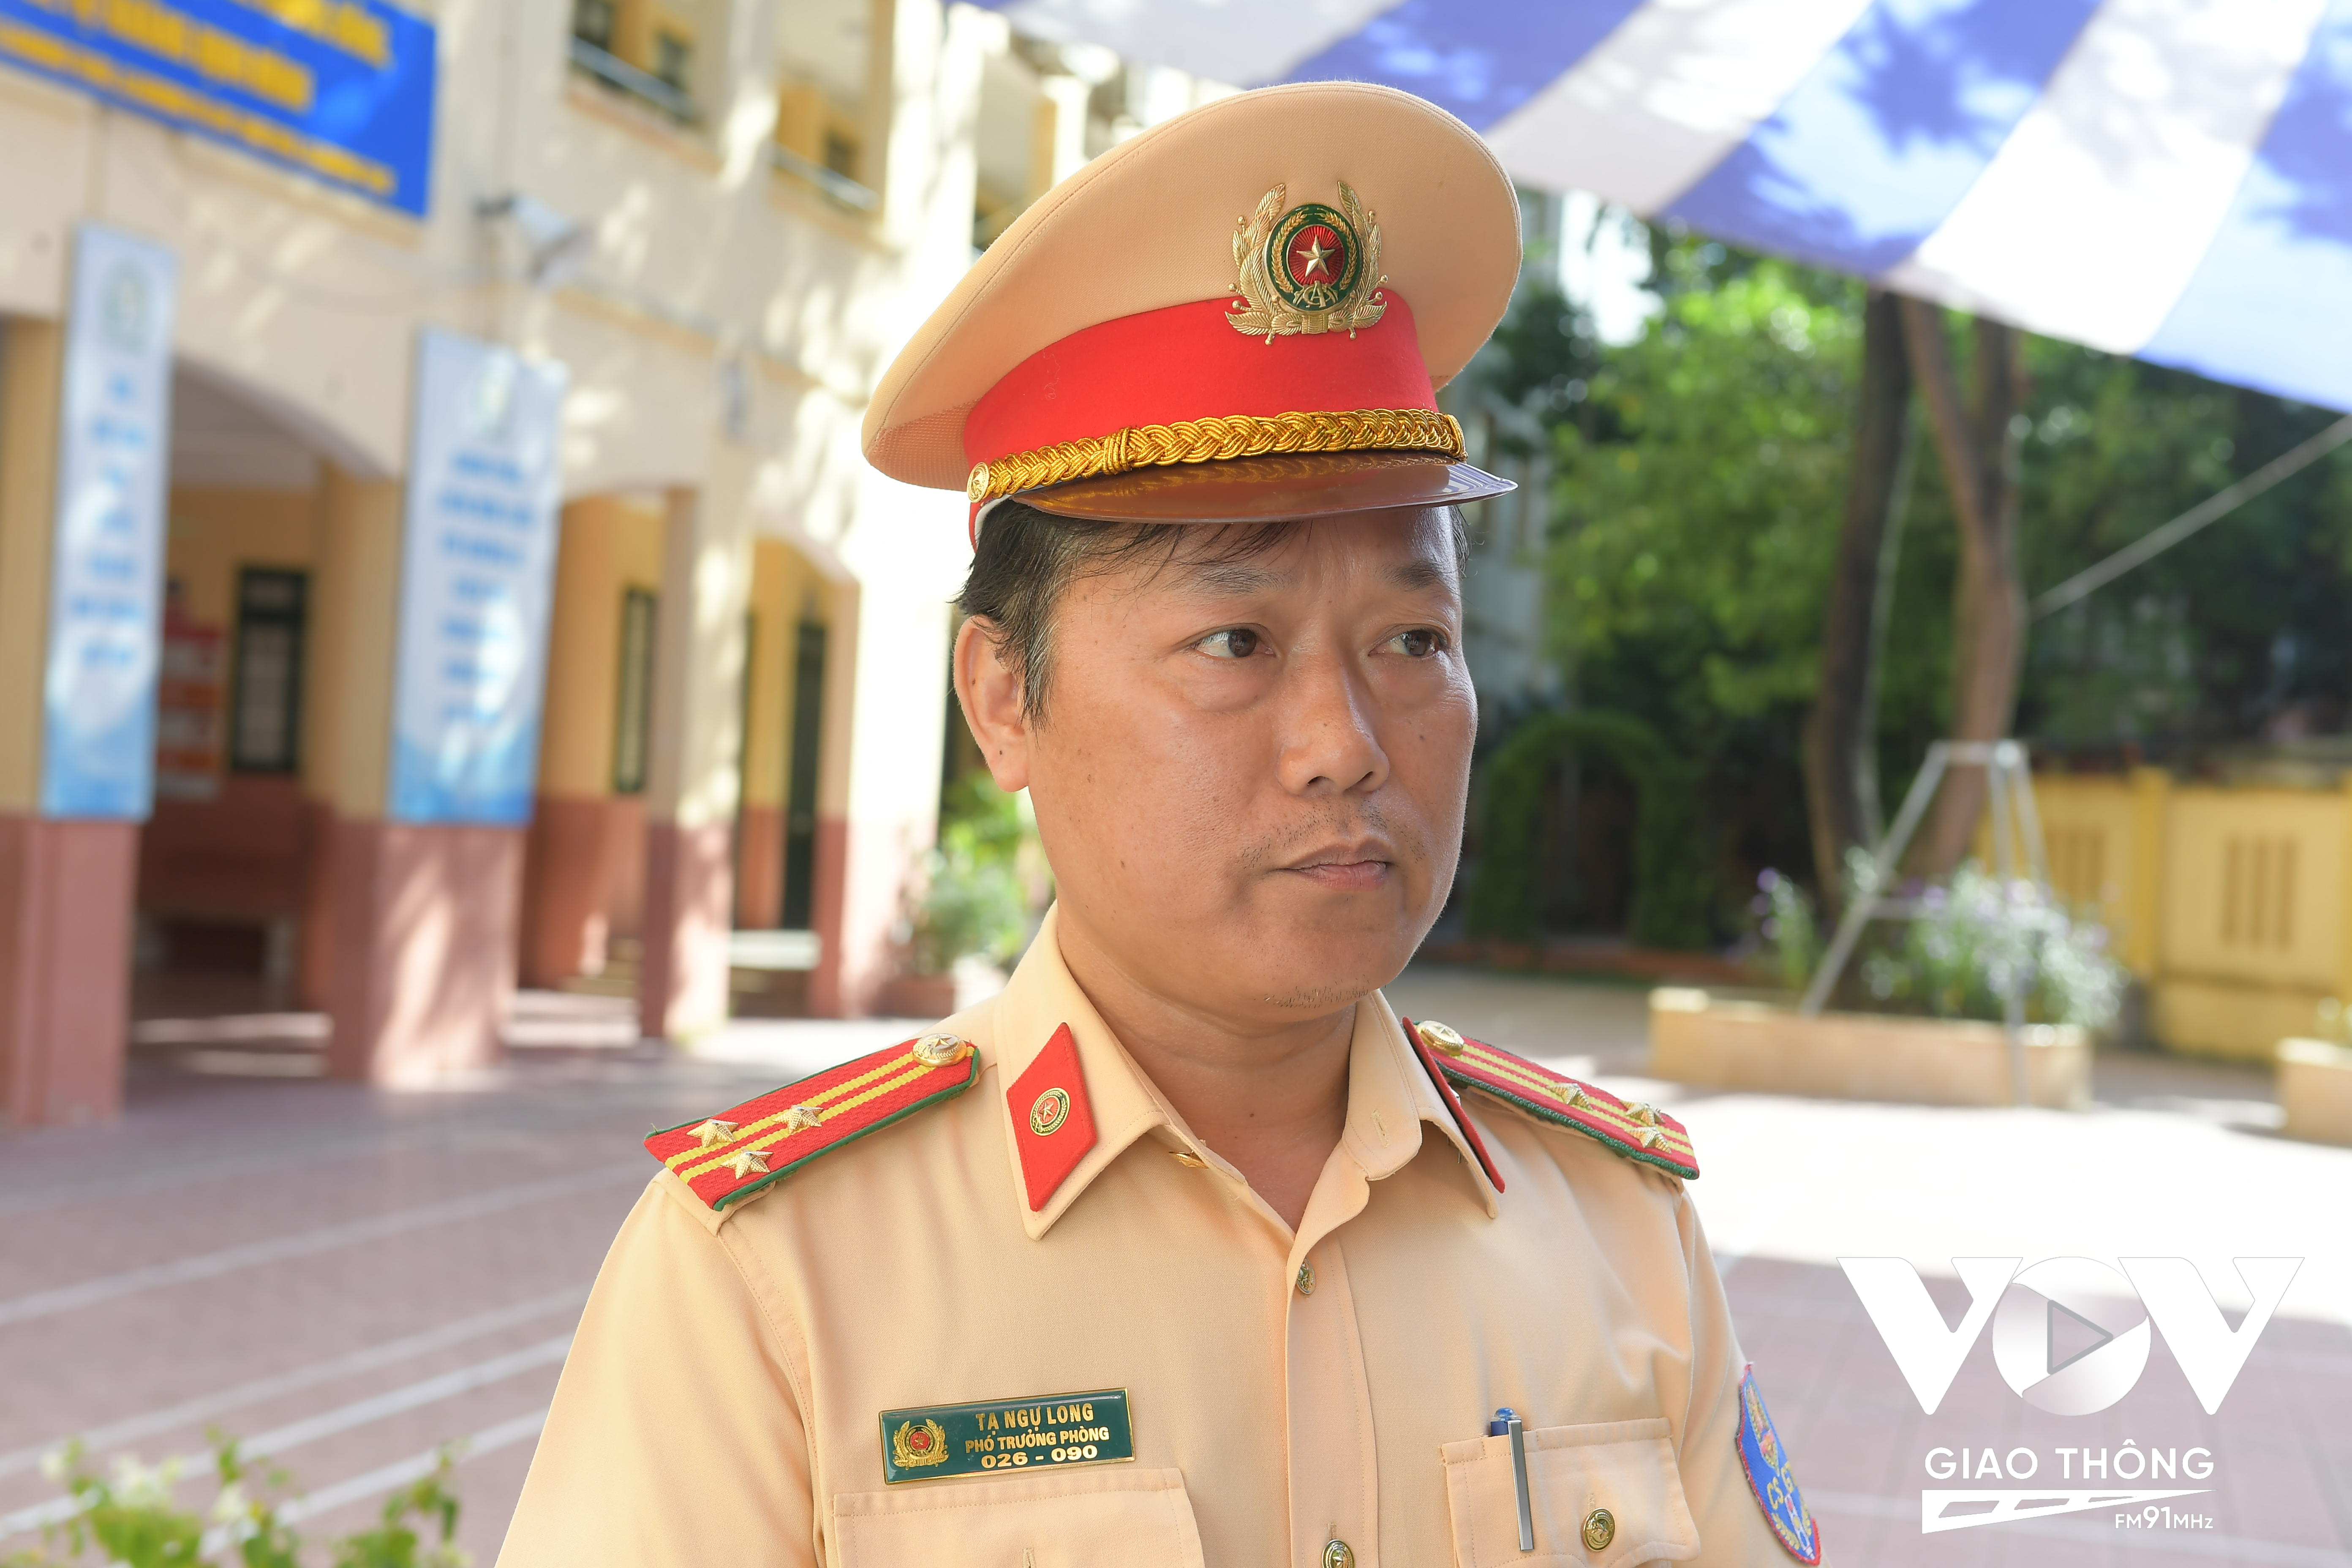 Theo Thượng tá Tạ Ngự Long, phó trưởng Phòng 8 (Cục CSGT, Bộ Công an), vẫn còn tình trạng học sinh vi phạm luật ATGT để lại hậu quả nghiêm trọng.